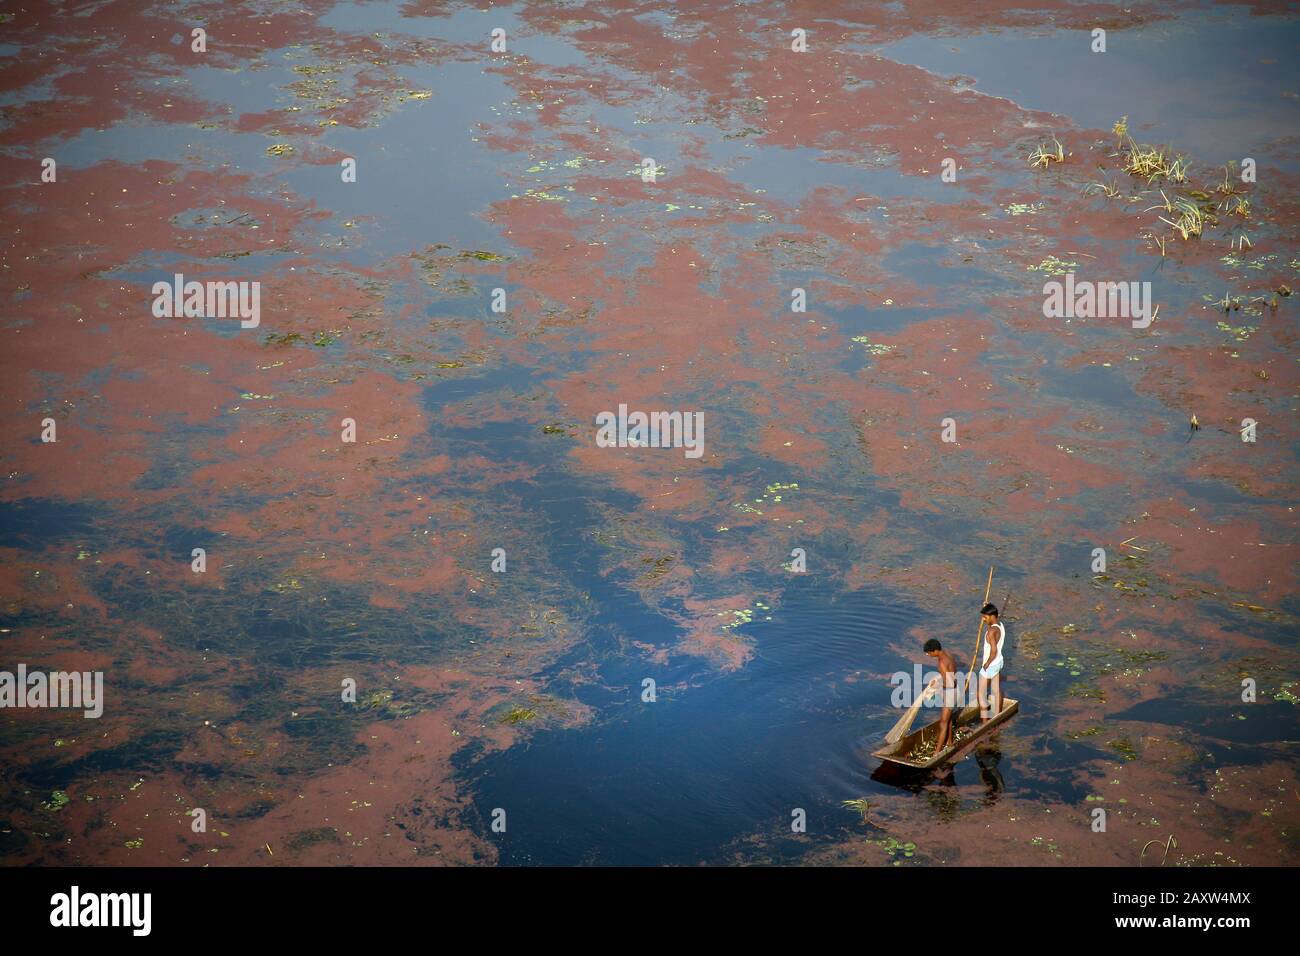 piccola barca e uomini su un lago coperto di alghe rosse Foto Stock